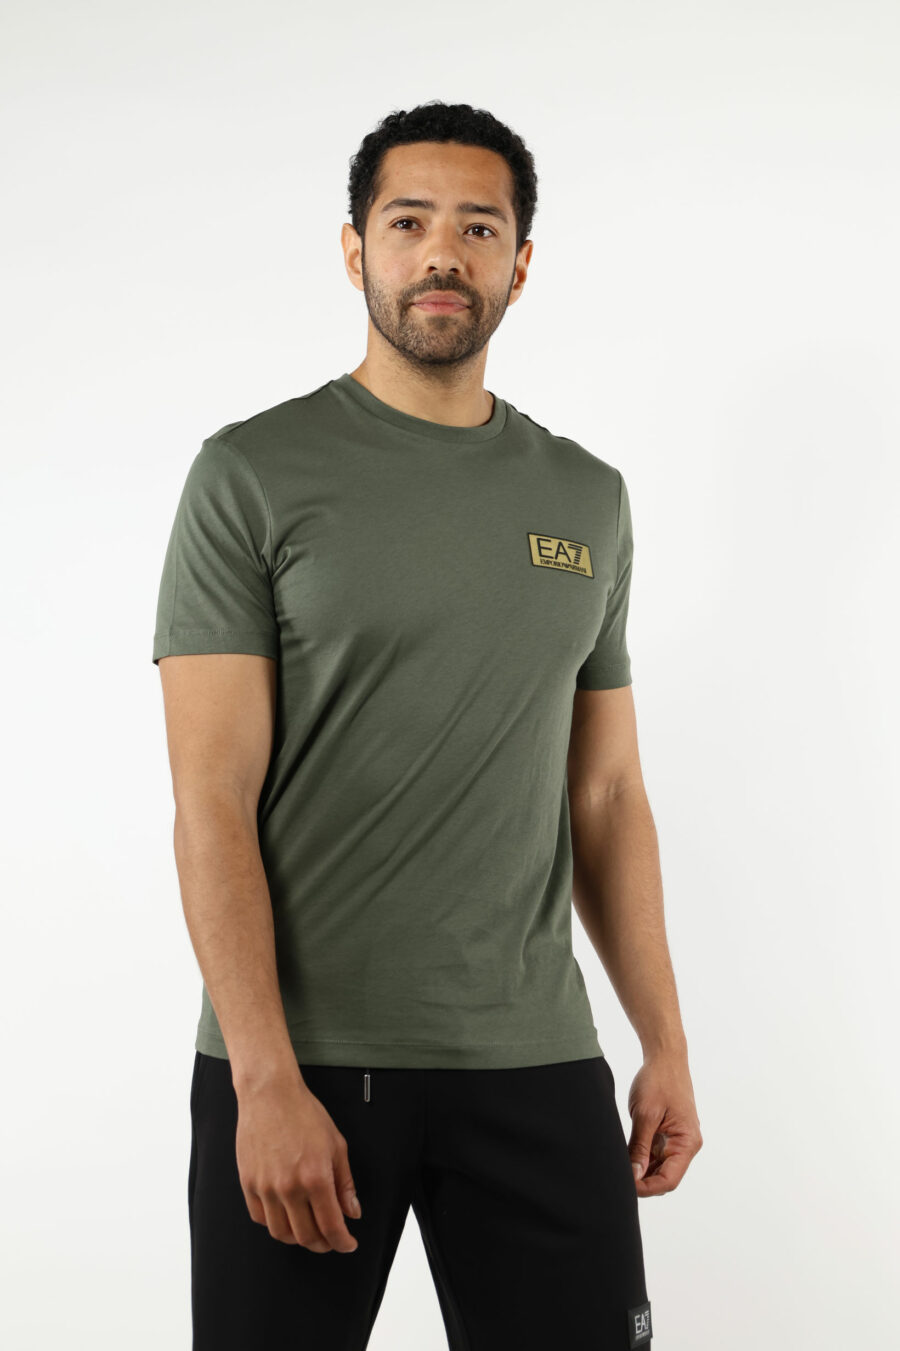 Grünes T-Shirt mit schwarzem Minilogo "lux identity" auf Goldplatte - 110877